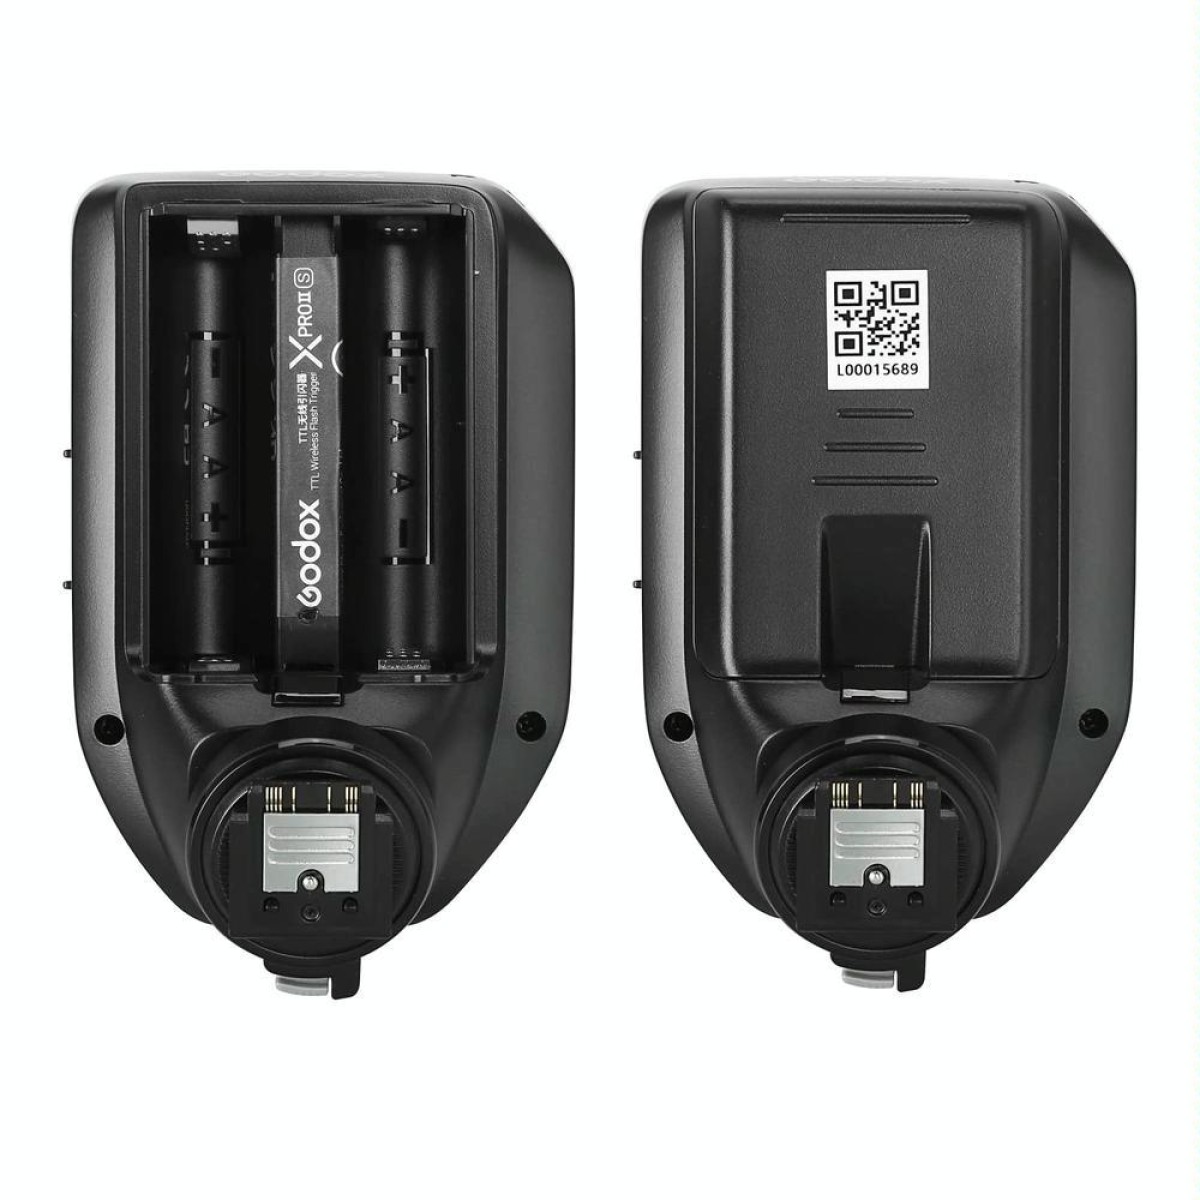 Godox XPro II TTL Wireless Flash Trigger For Olympus / Panasonic(Black)